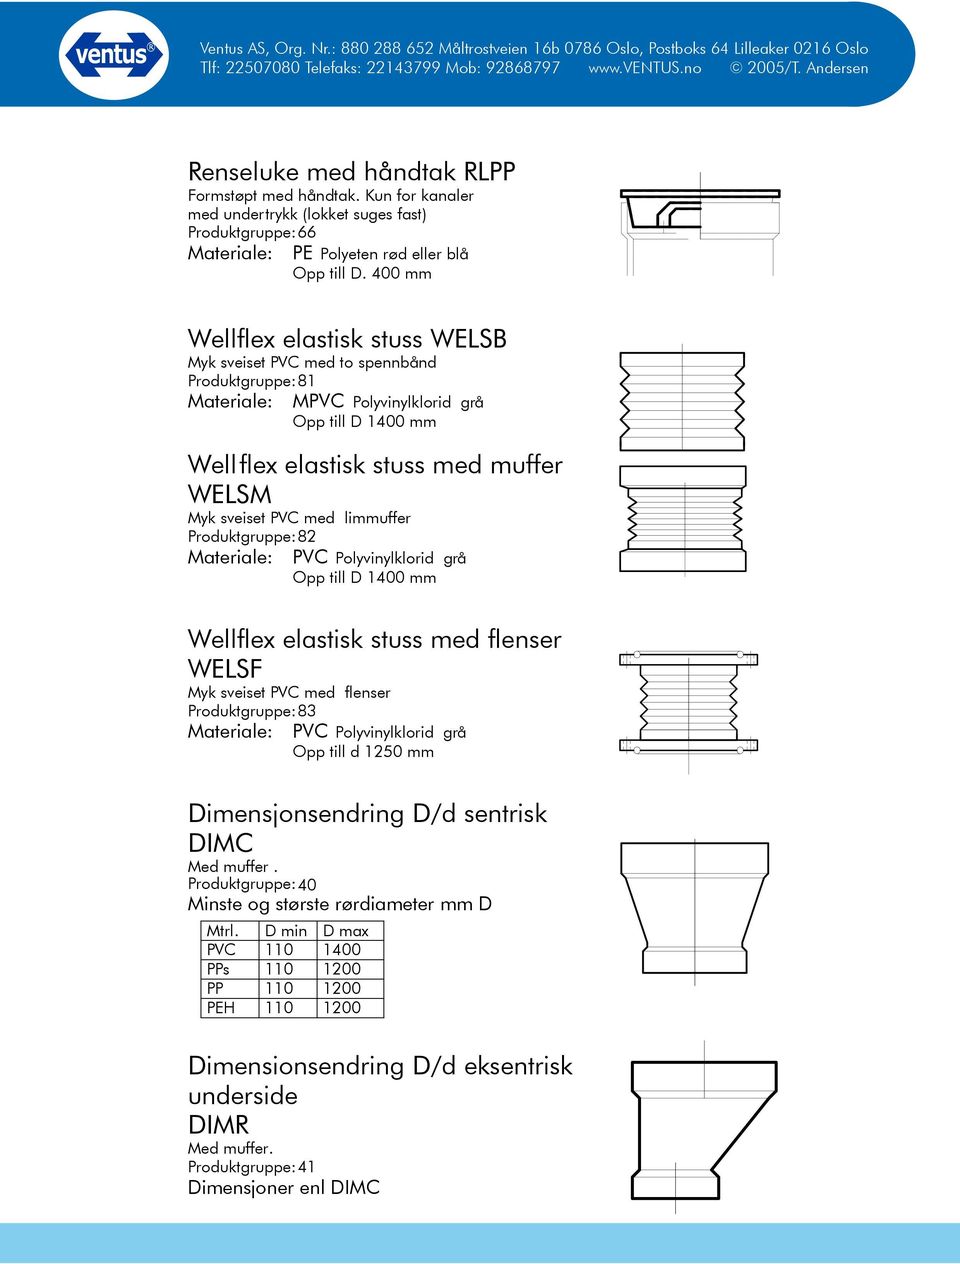 med limmuffer Produktgruppe: 82 Materiale: PVC Polyvinylklorid grå Opp till D 1400 mm Wellflex elastisk stuss med flenser WELSF Myk sveiset PVC med flenser Produktgruppe: 83 Materiale: PVC